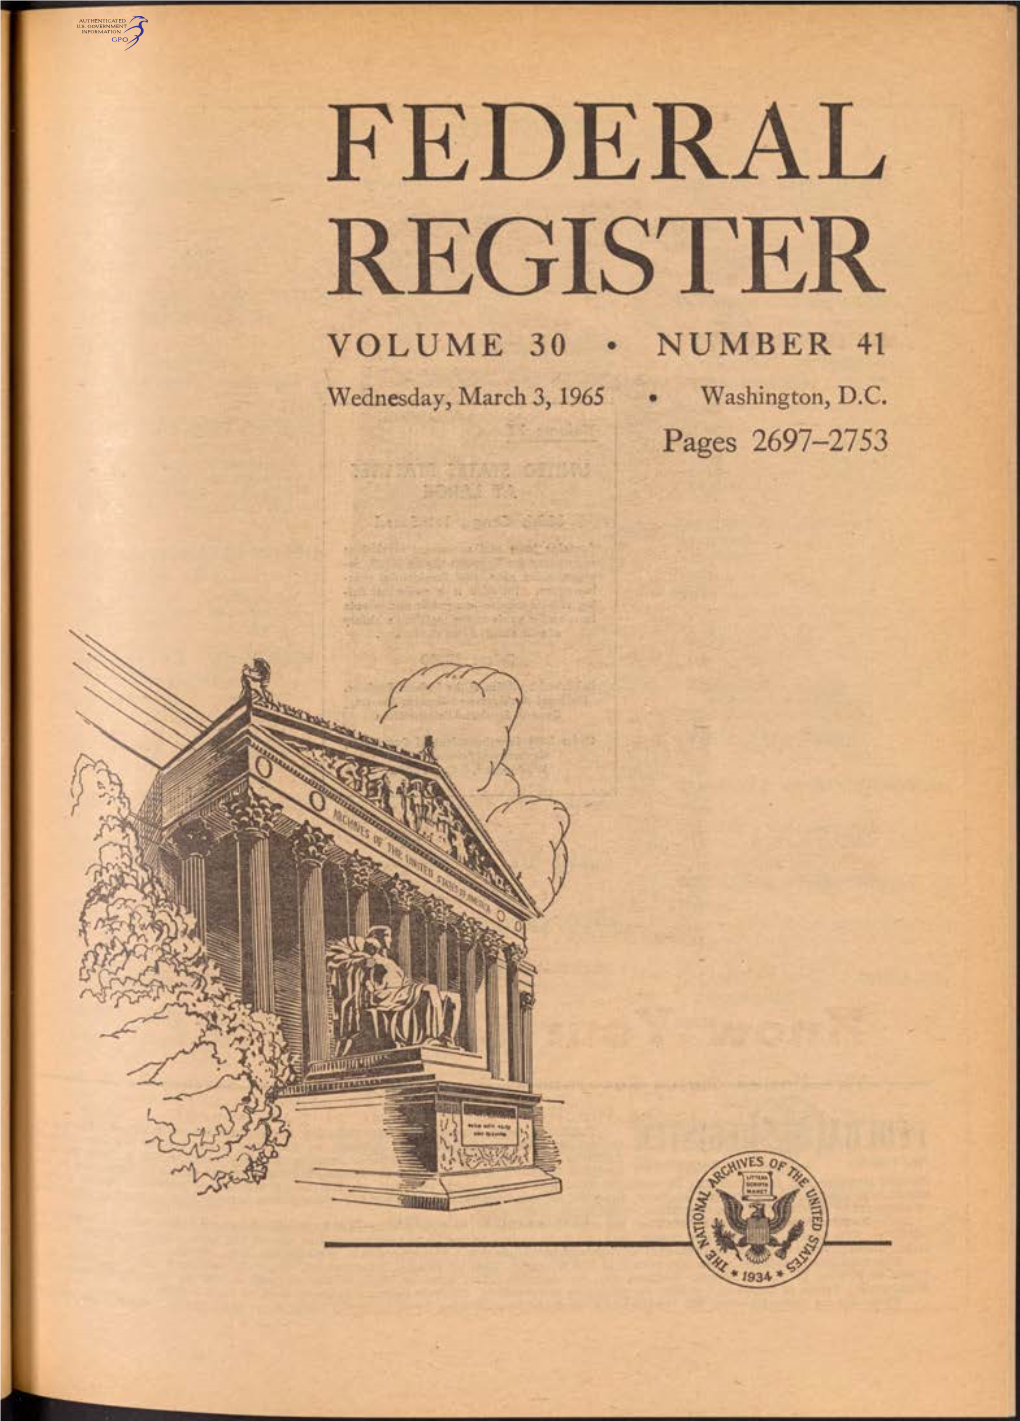 Federal Register Volume 30 • Number 41